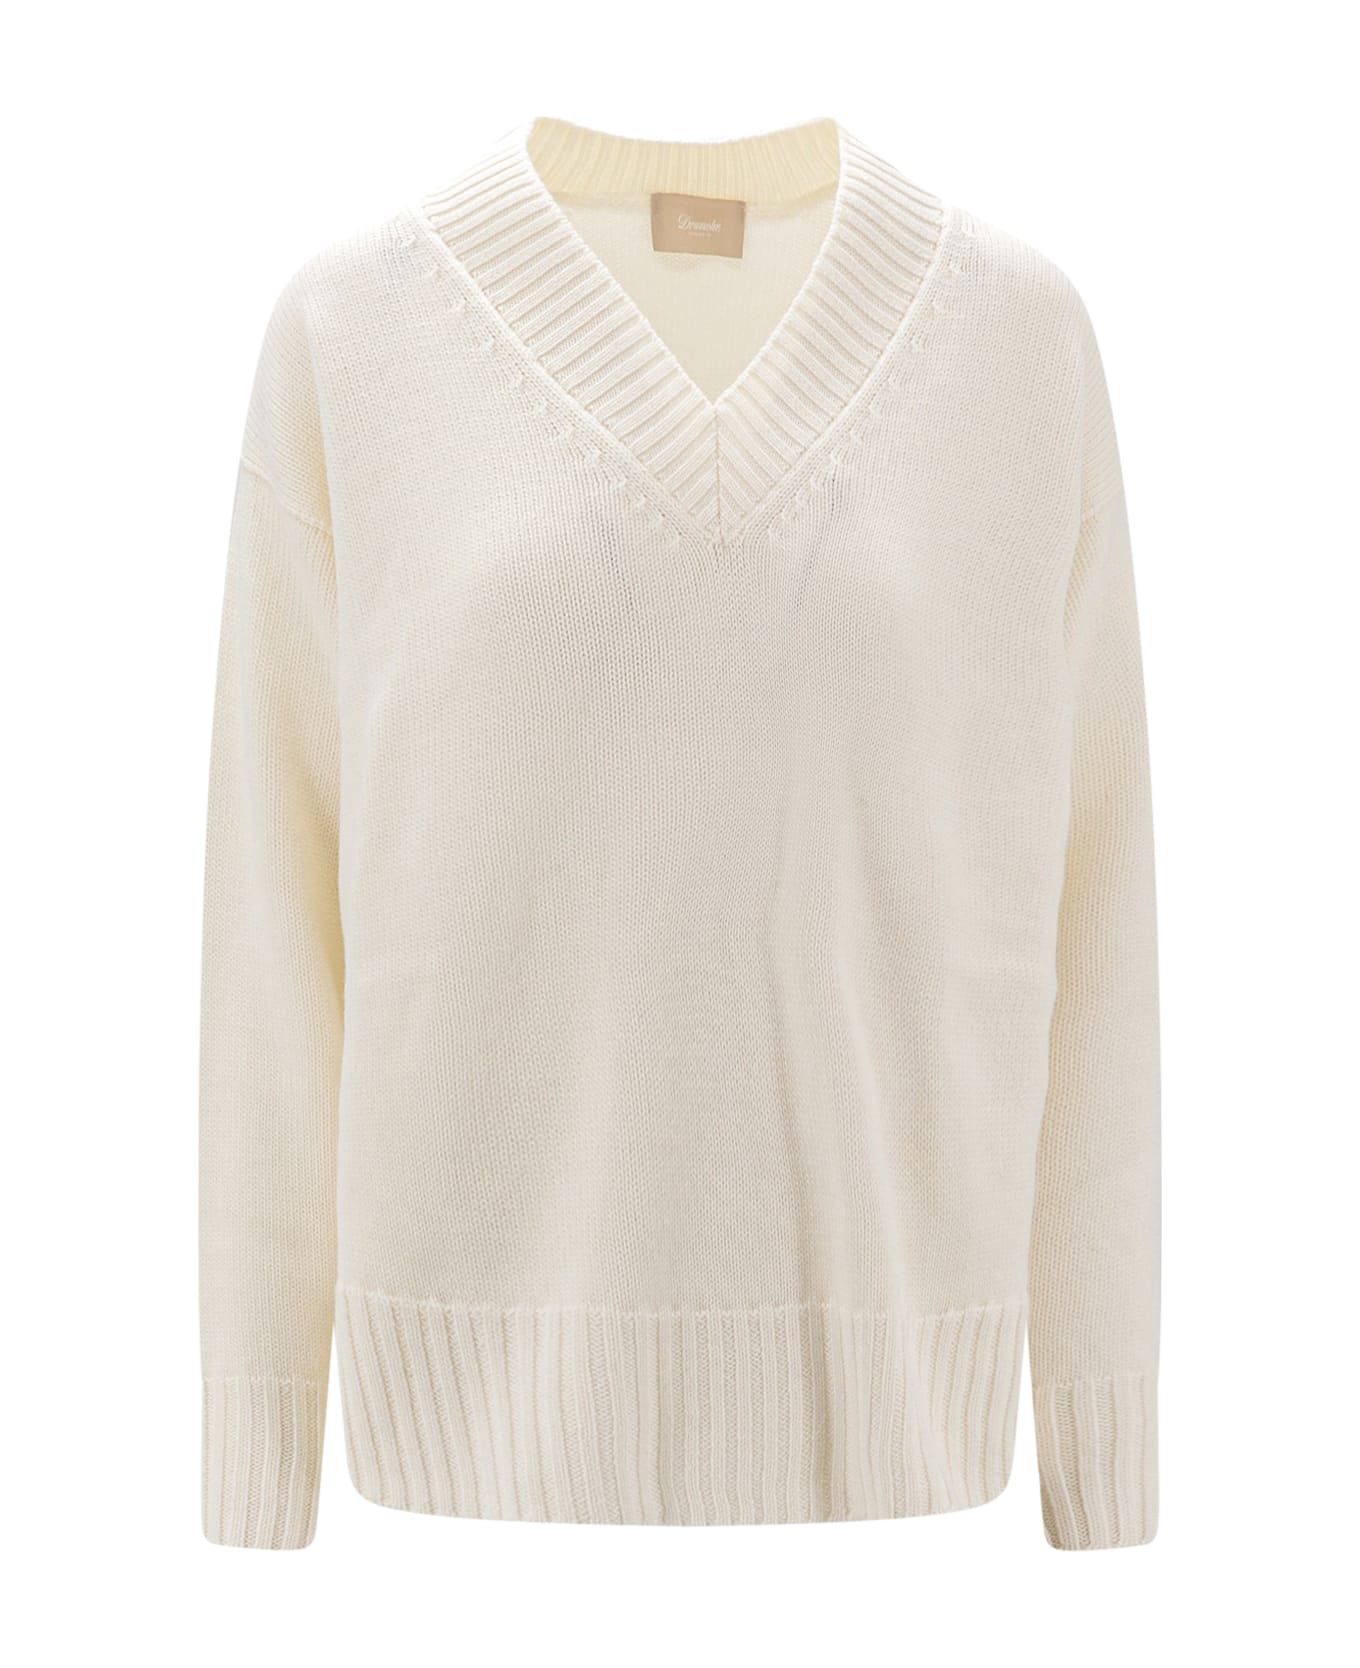 Drumohr Sweater - White